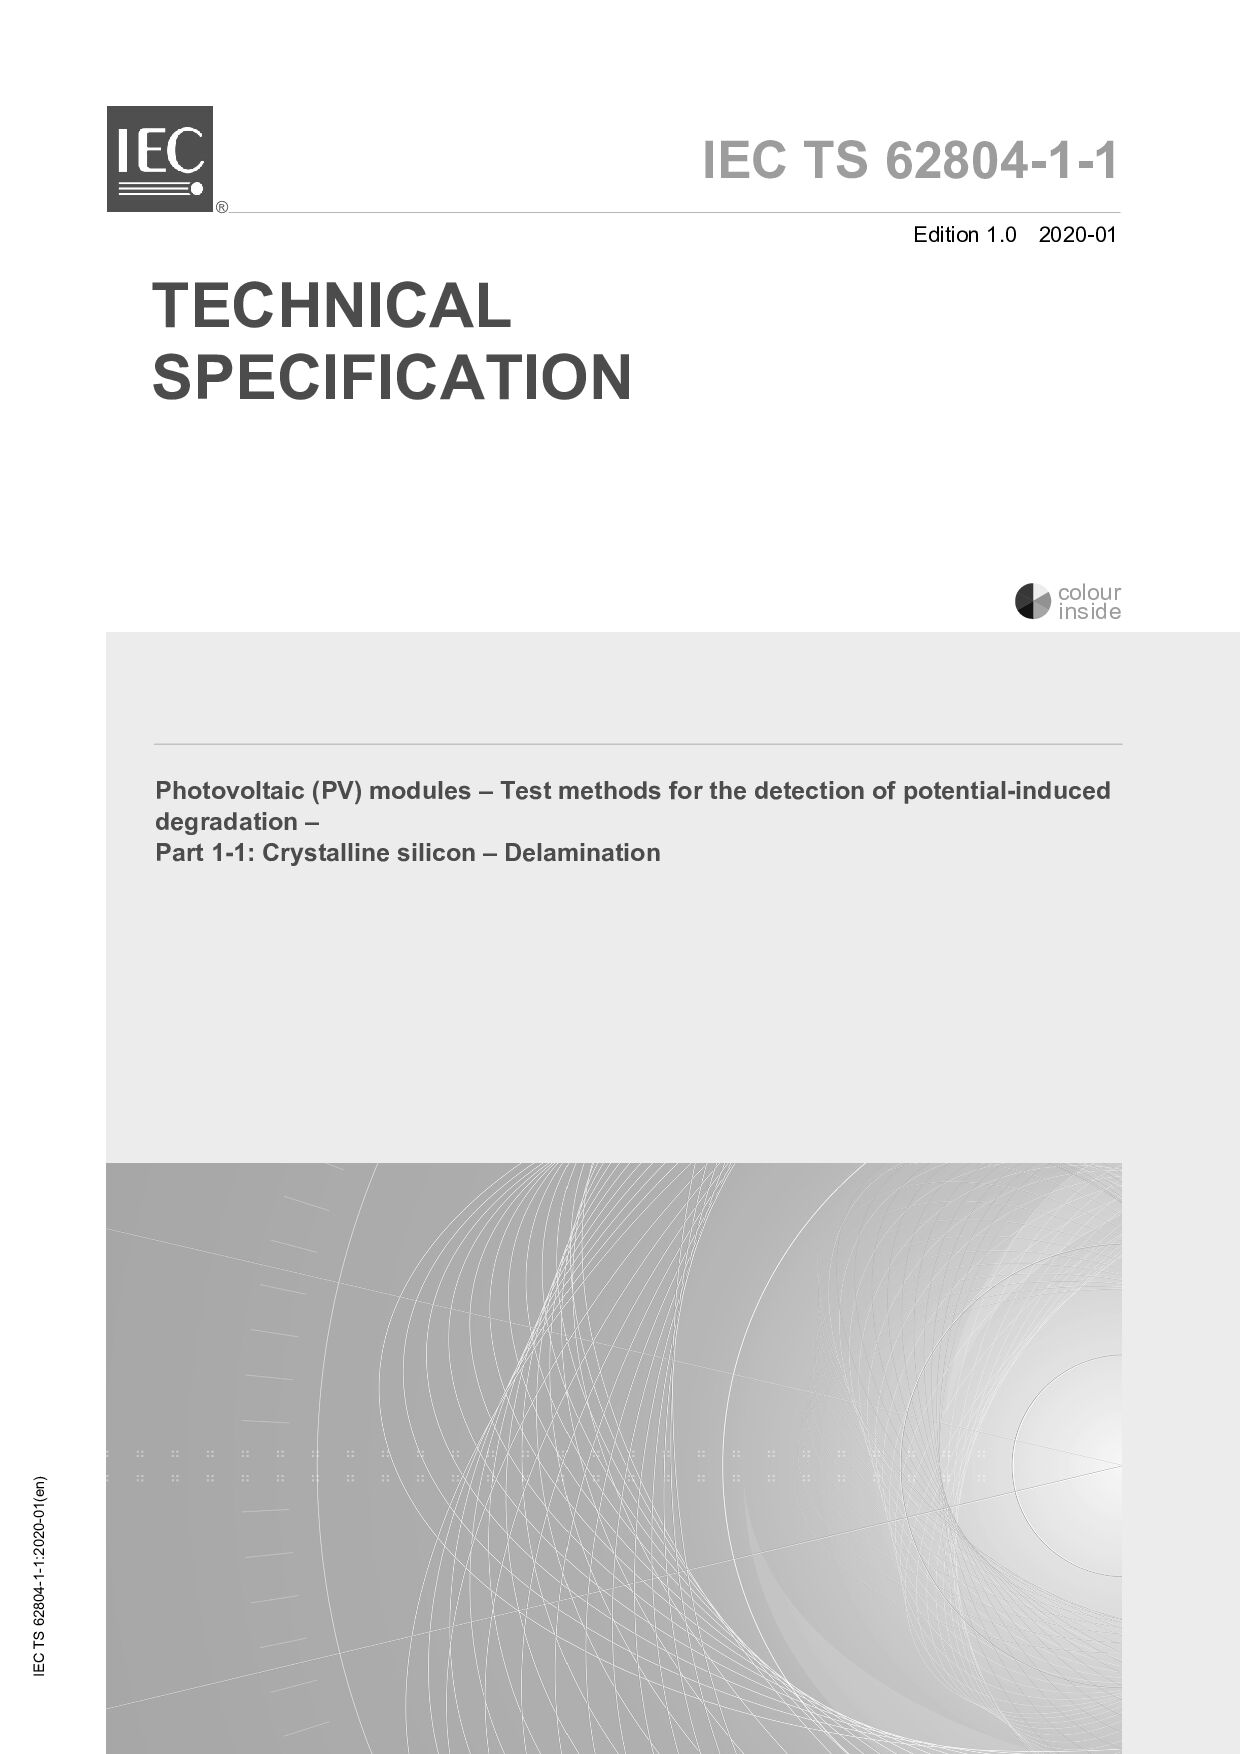 IEC TS 62804-1-1:2020